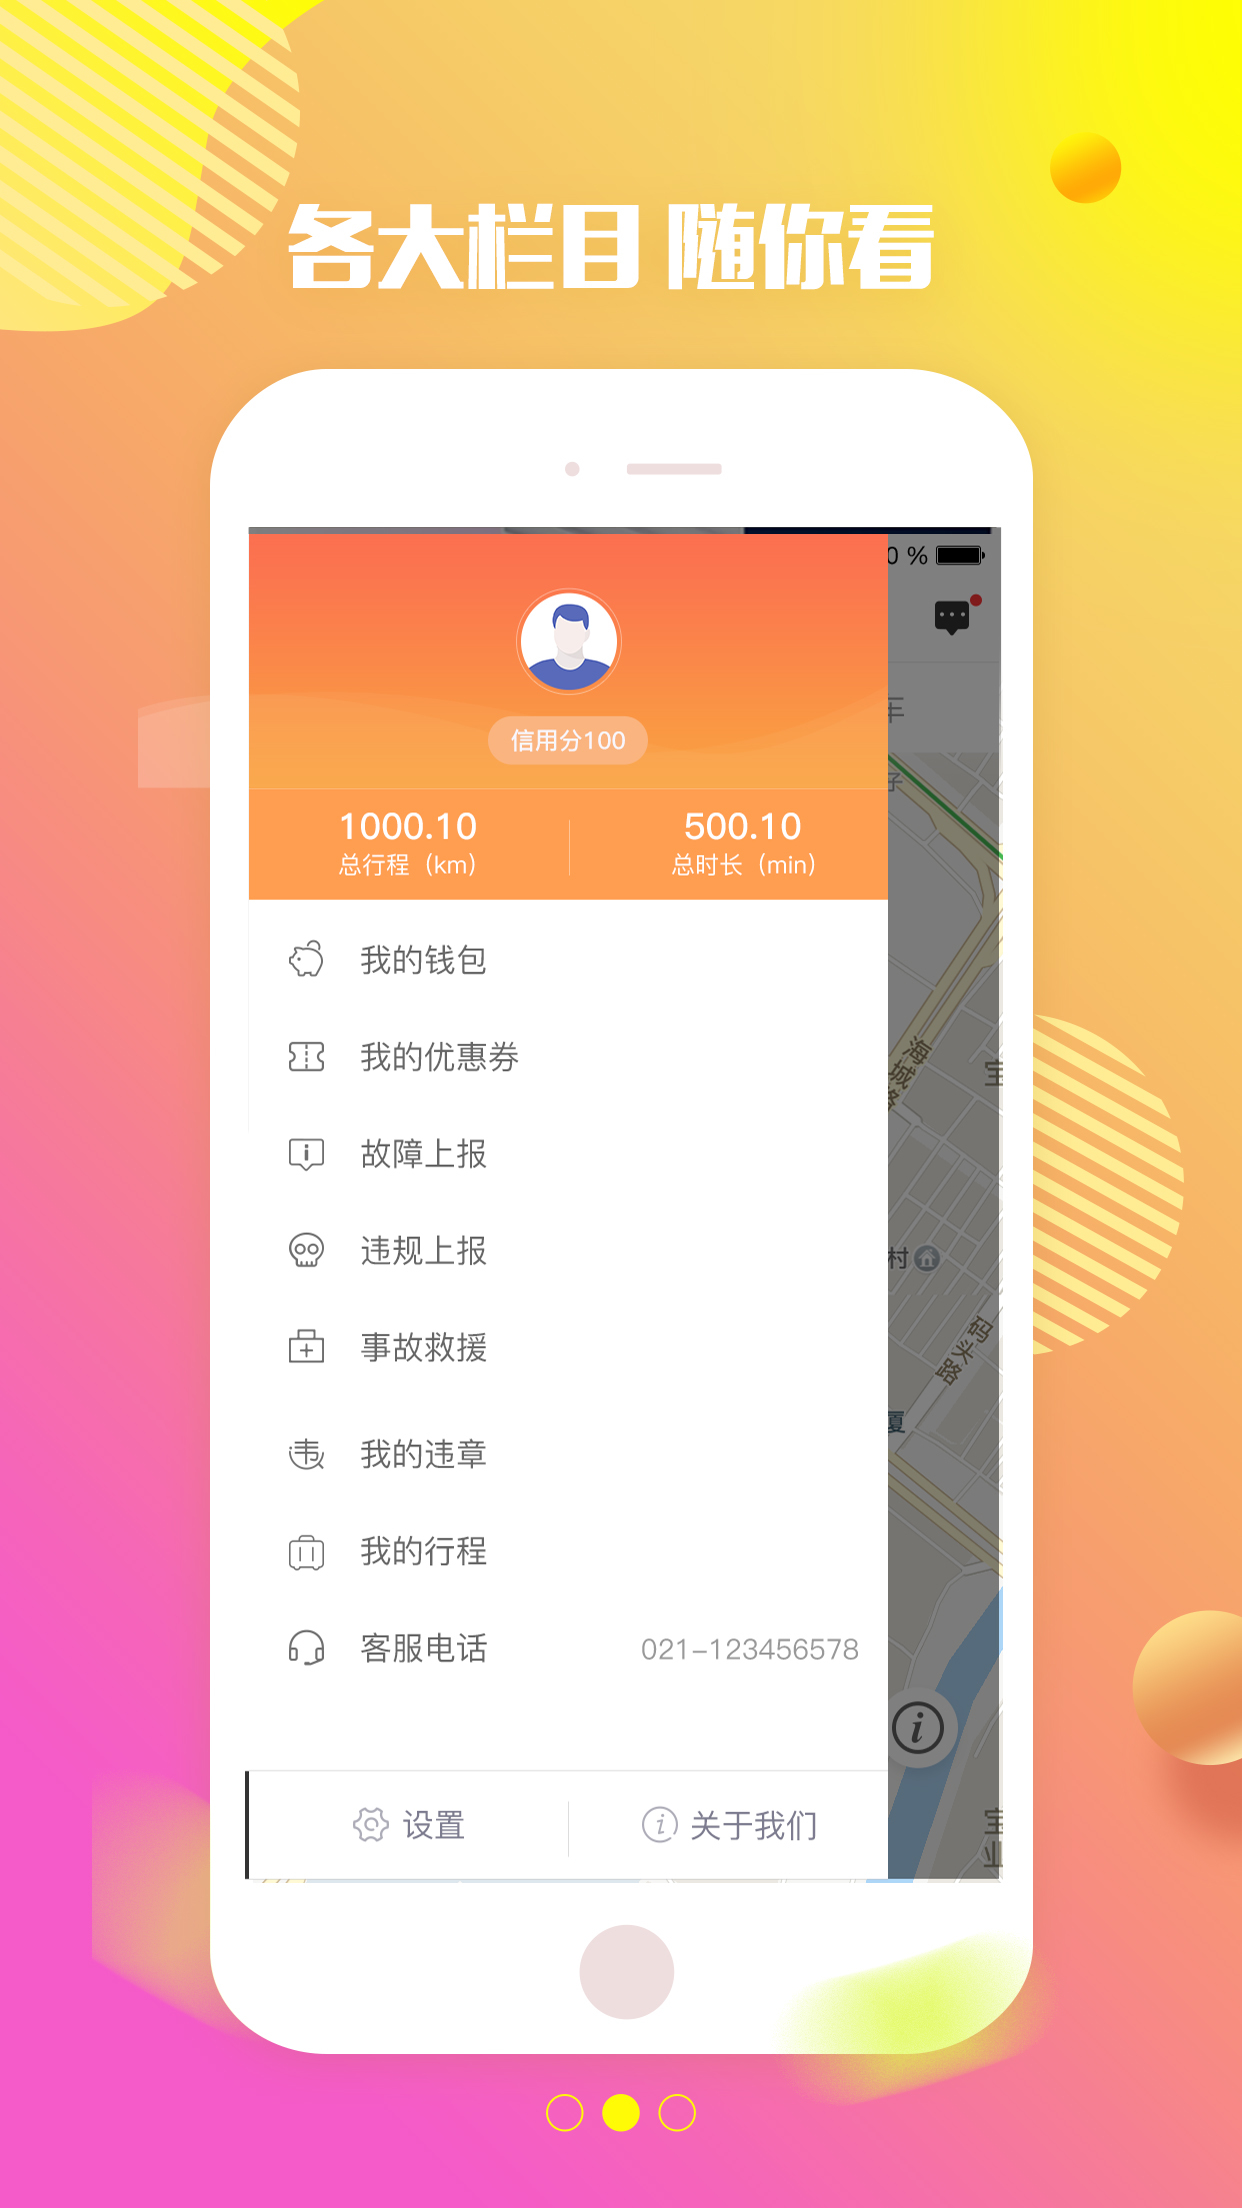 特治智能共享汽车官方下载手机版app客户端图2: